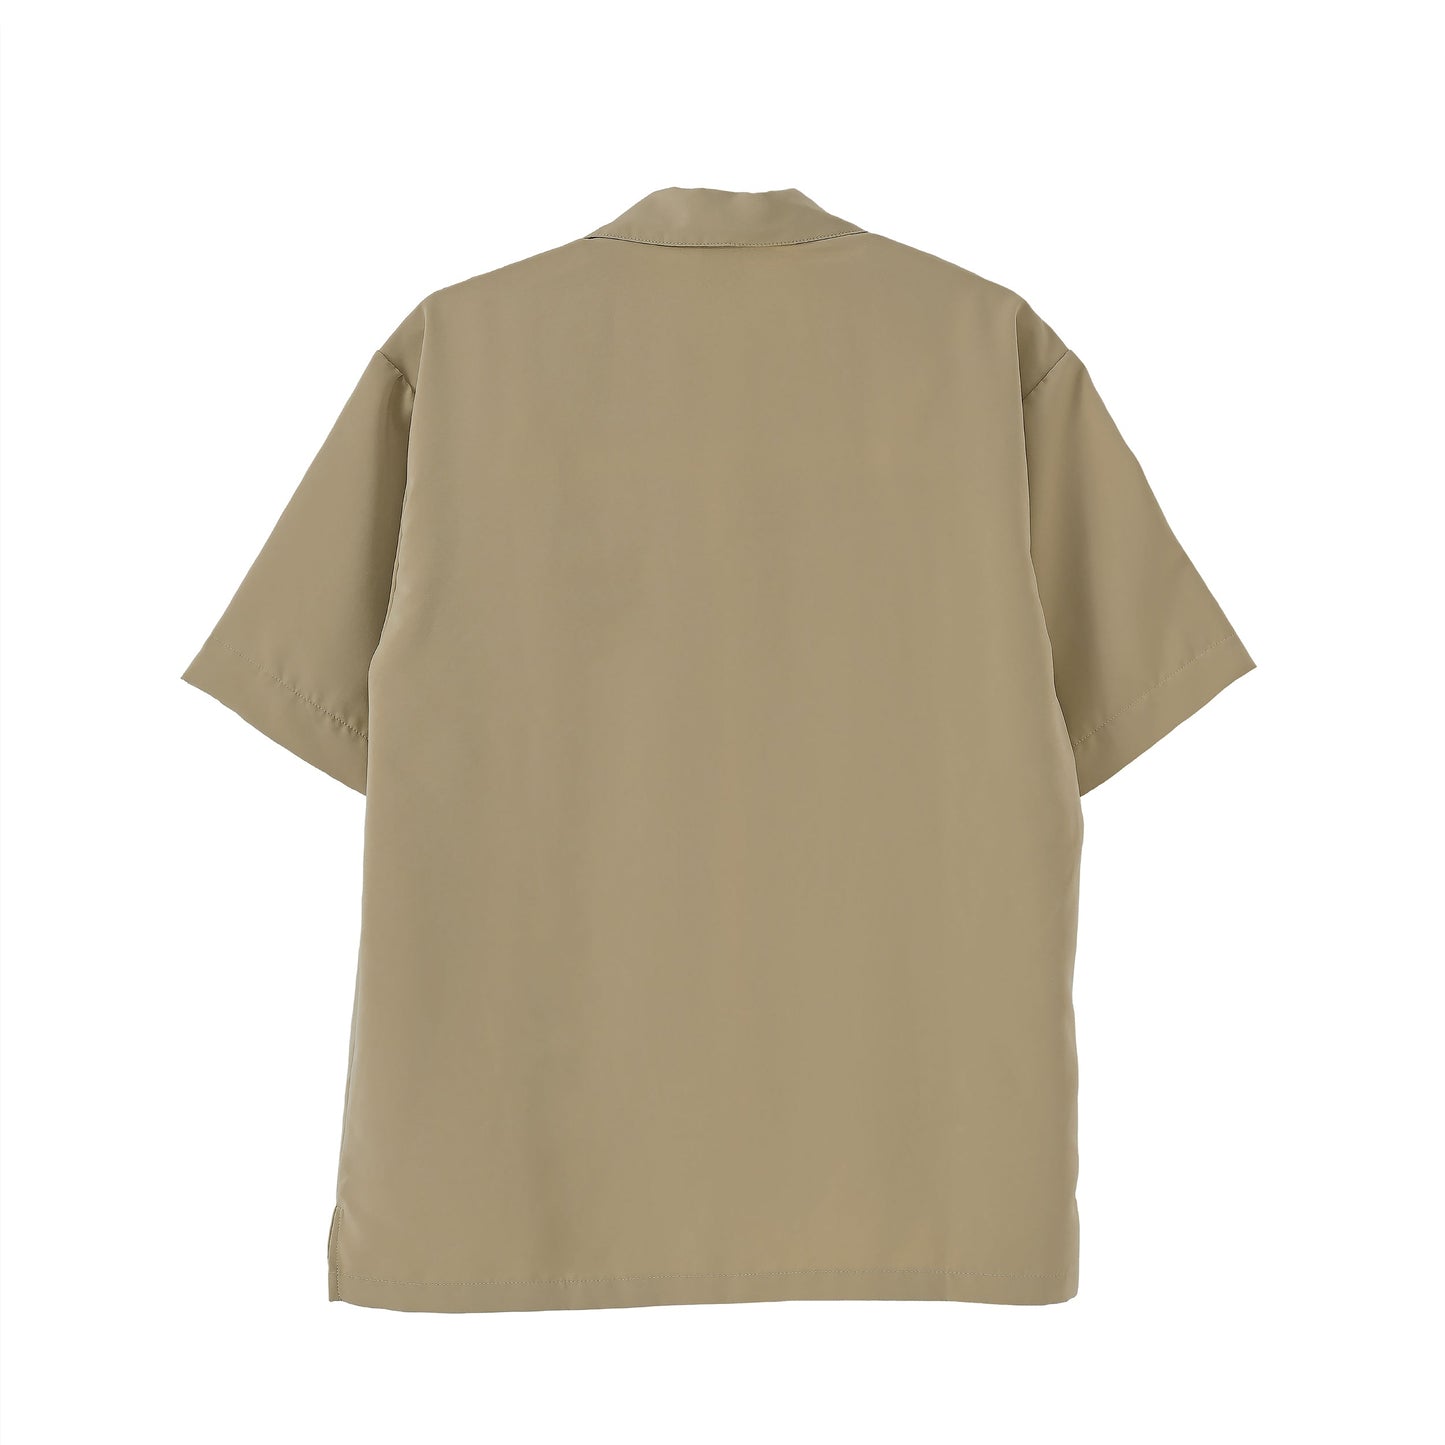 【アウトレット】Premium Col. / Silky Open collar shirt